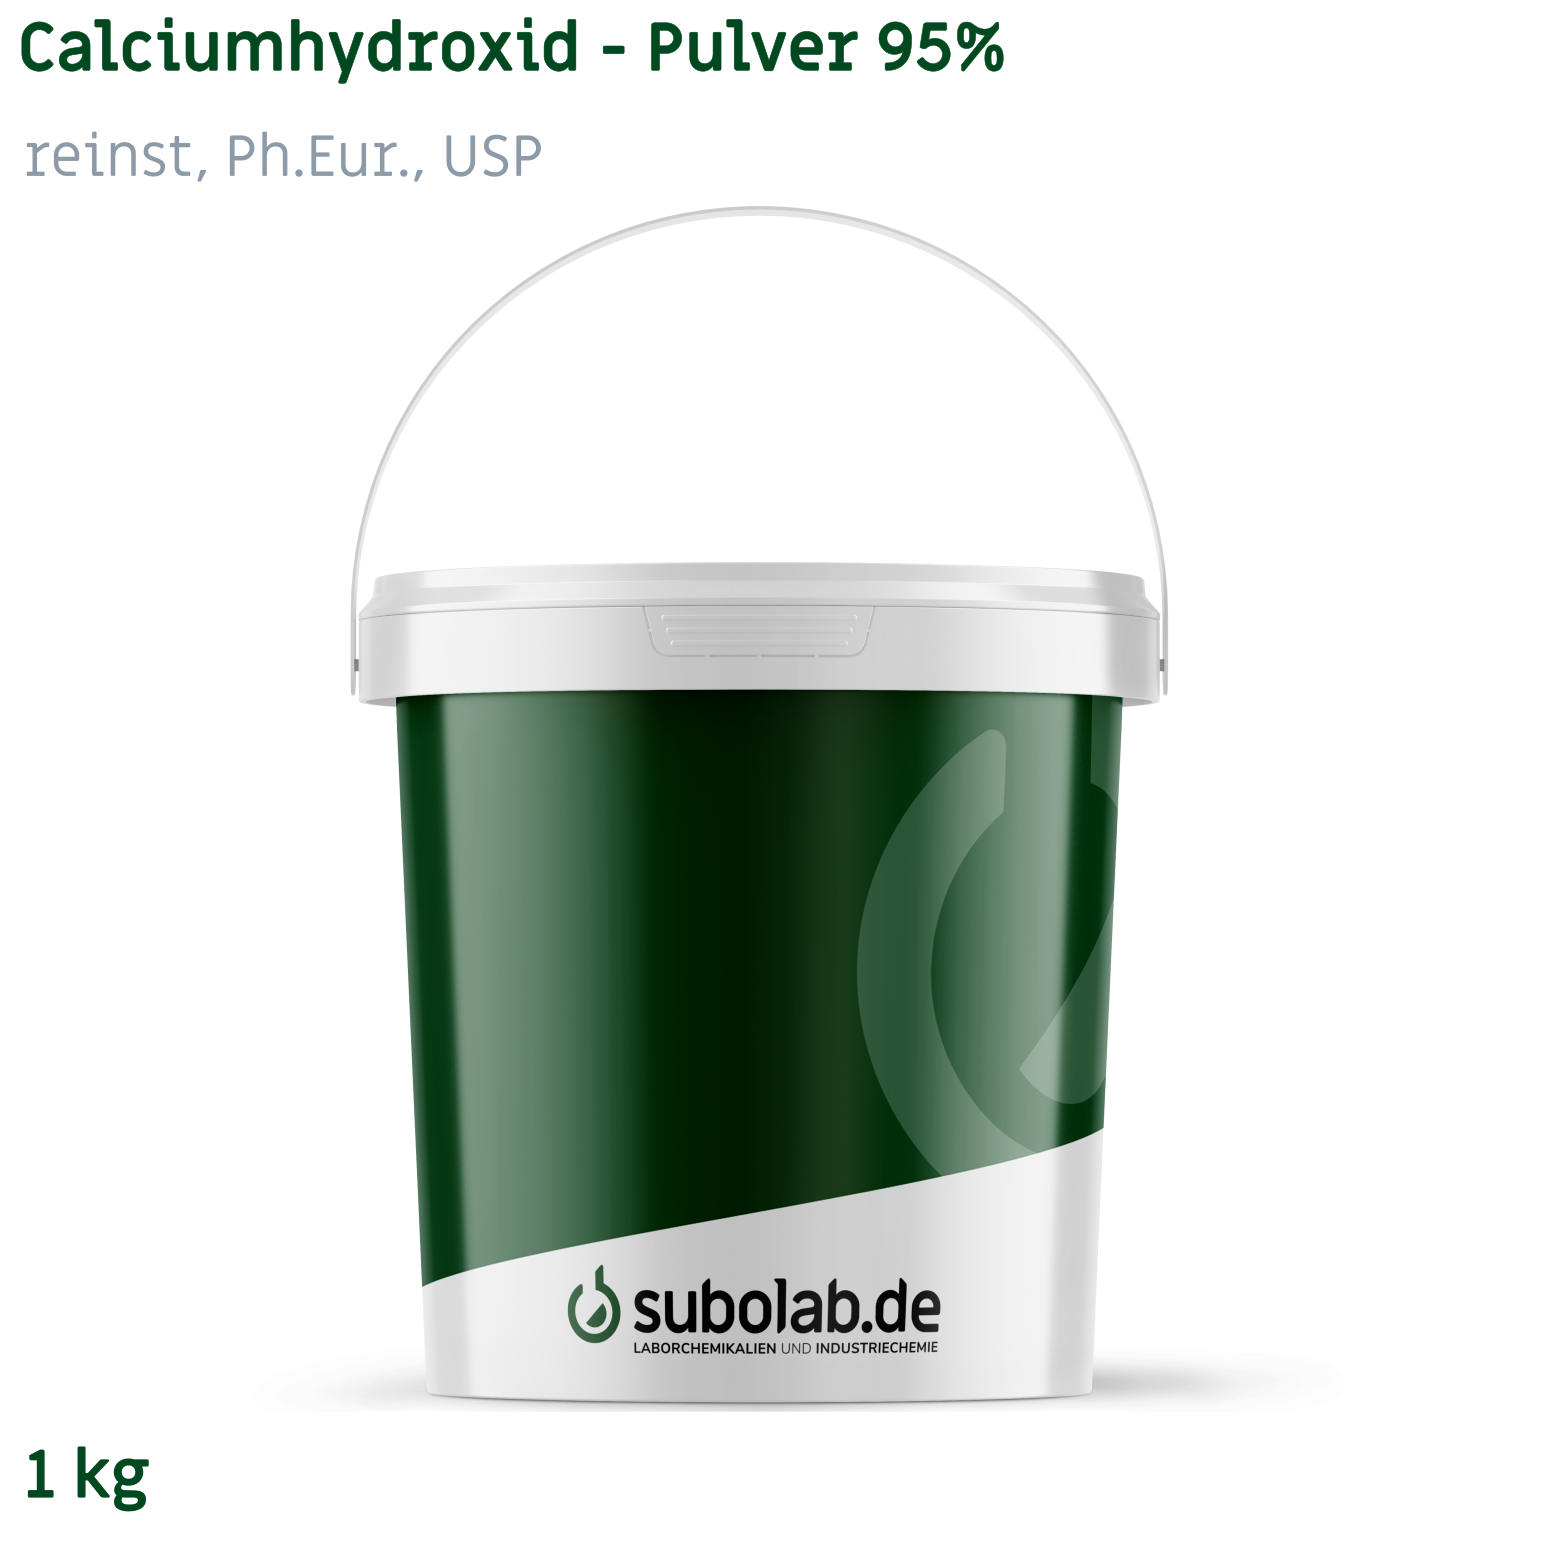 Bild von Calciumhydroxid - Pulver 95% reinst, Ph.Eur., USP (1 kg)